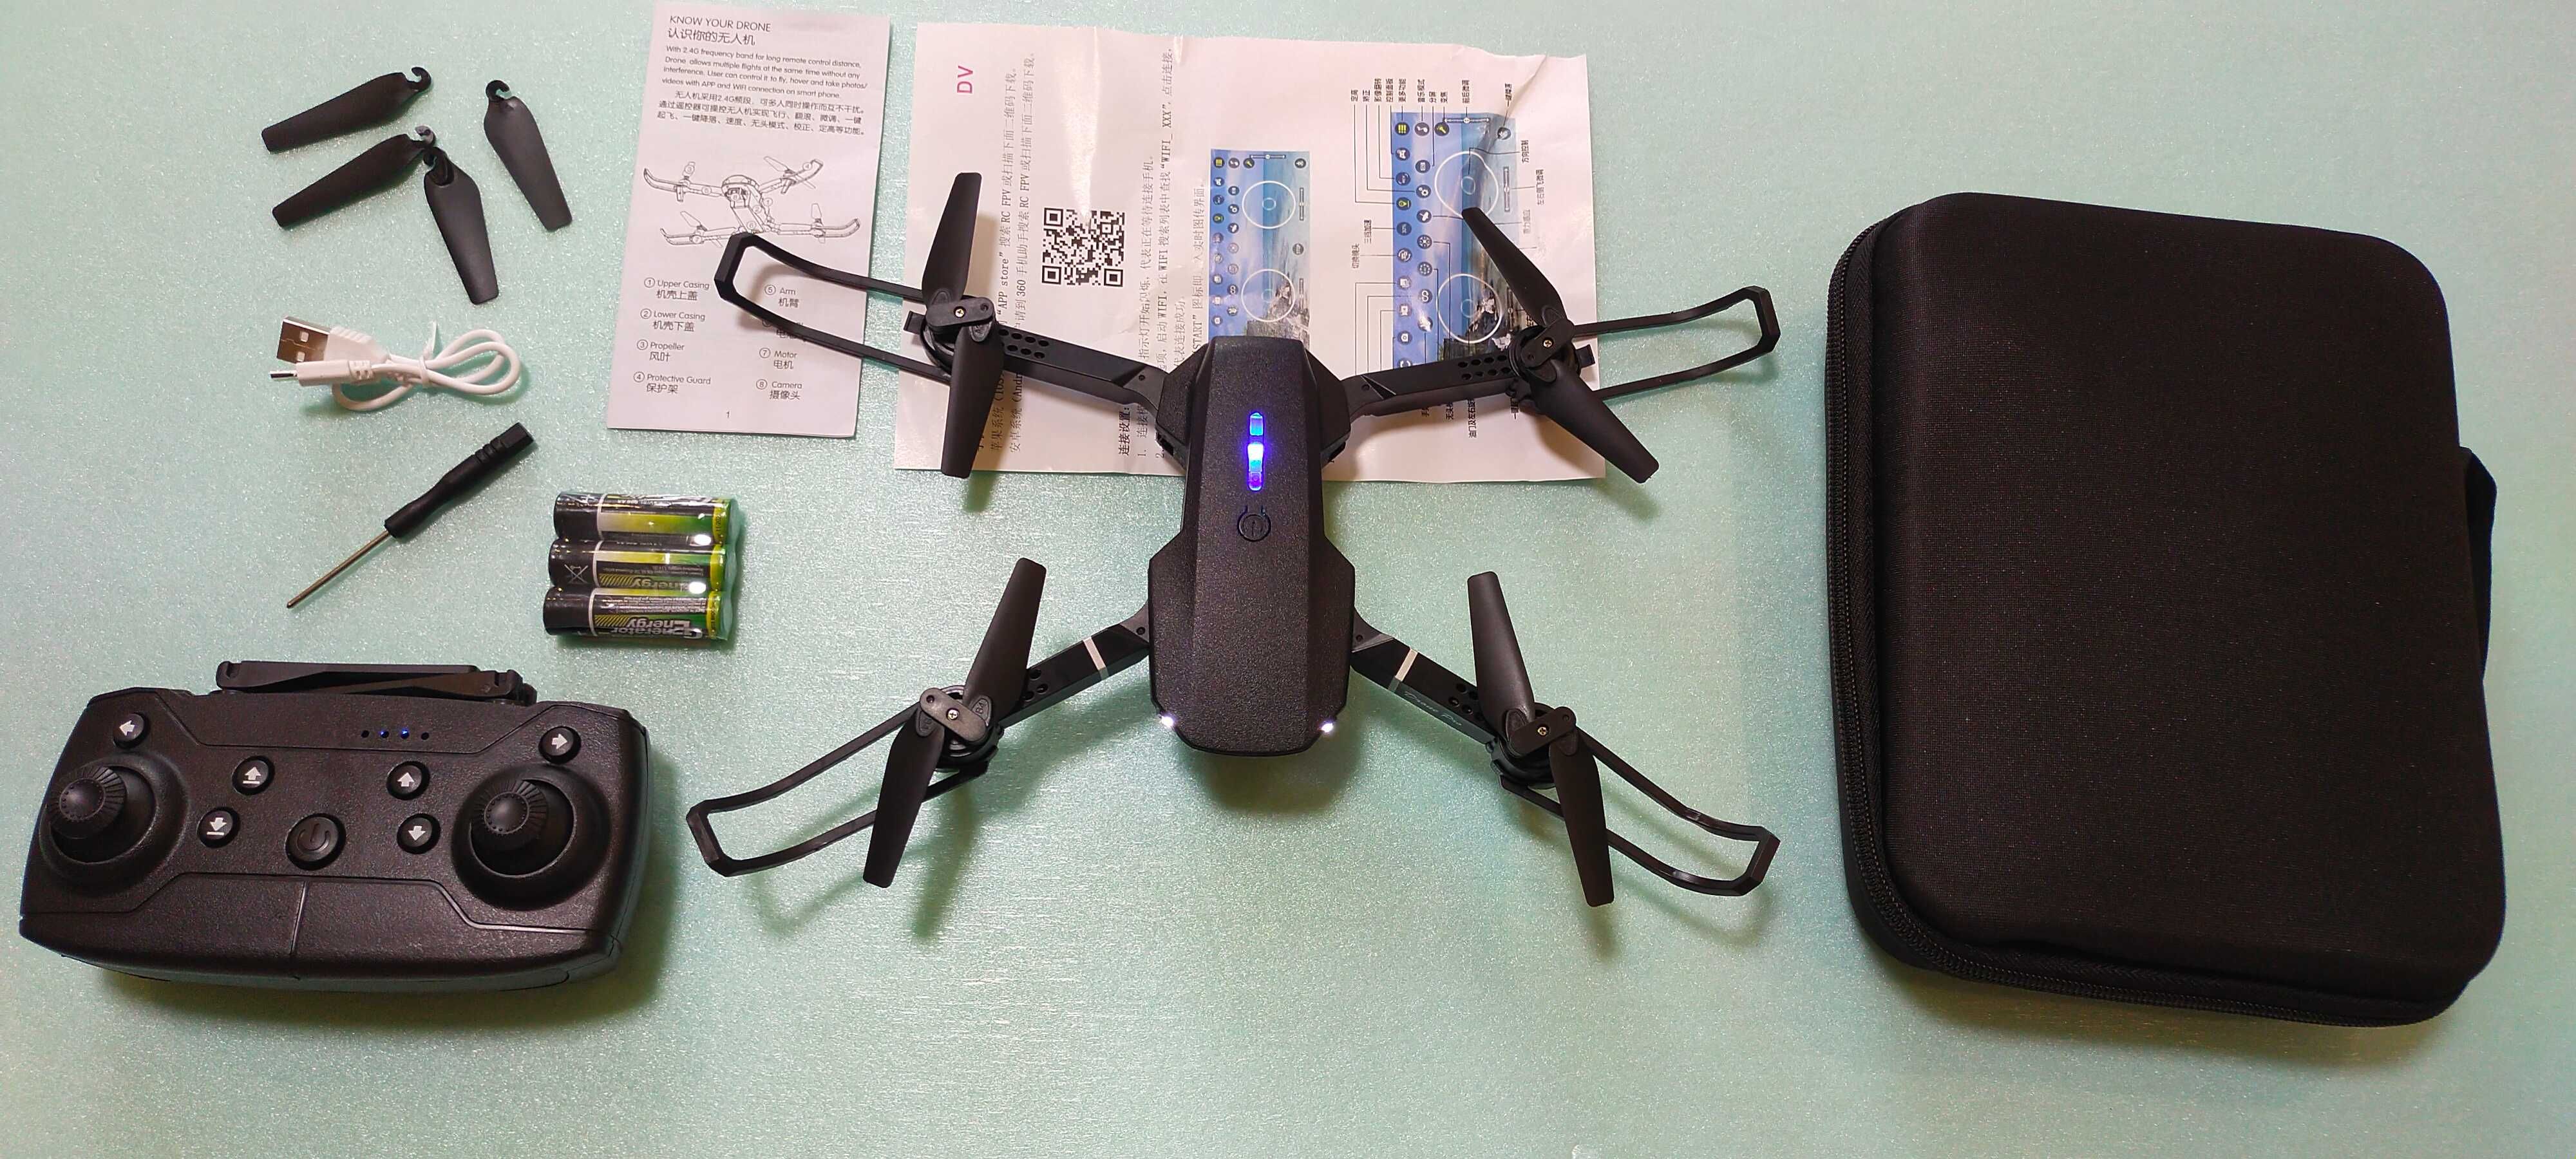 Квадрокоптер Е88 дрон  коптер мини БПЛА супер игрушка детям и взрослым